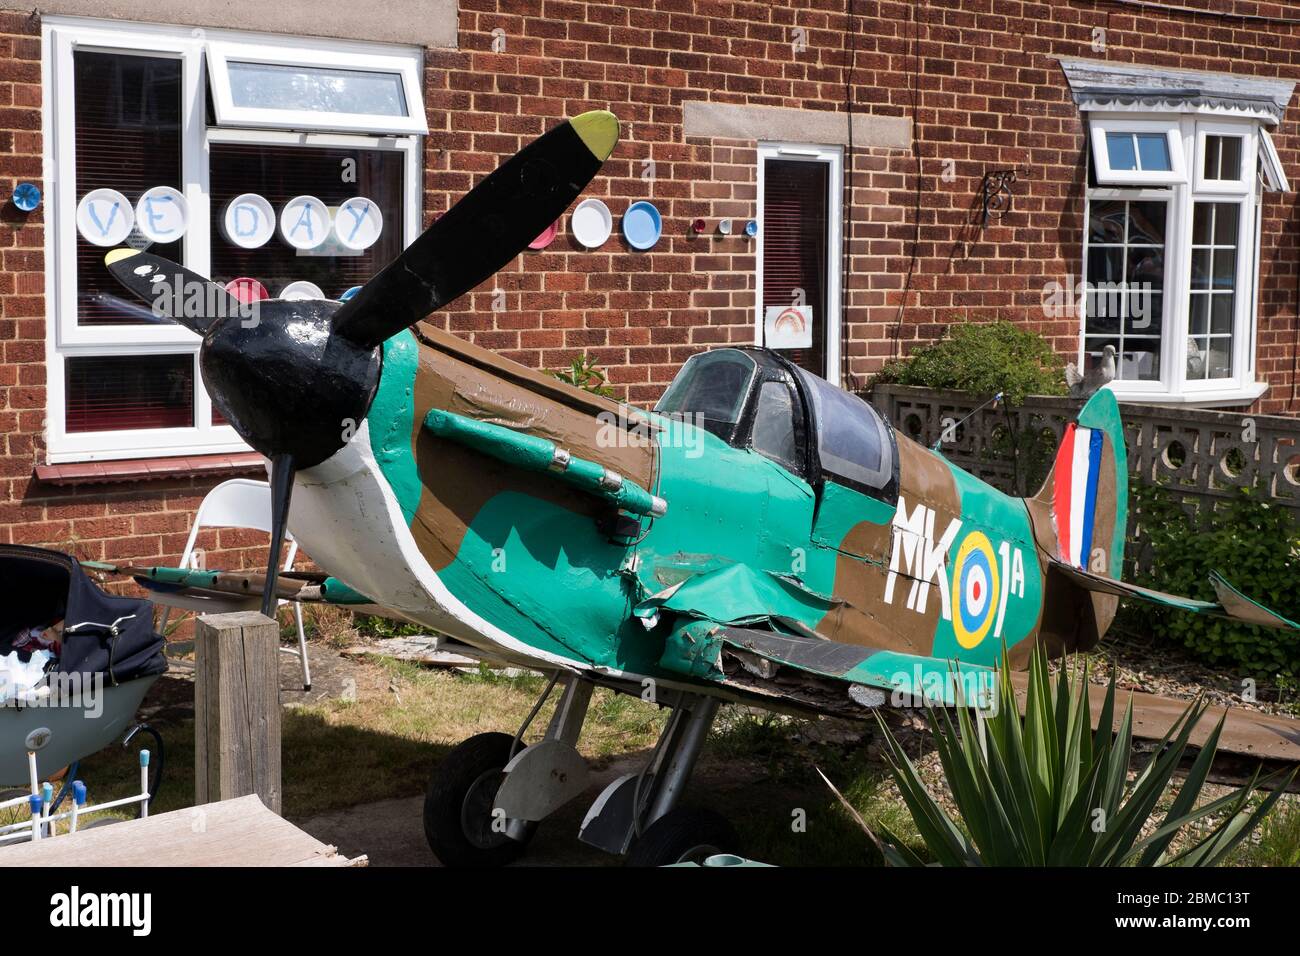 Un avion de chasse Spitfire de grande échelle dans un jardin à l'avant à Bugbrooke, dans le Northamptonshire Banque D'Images